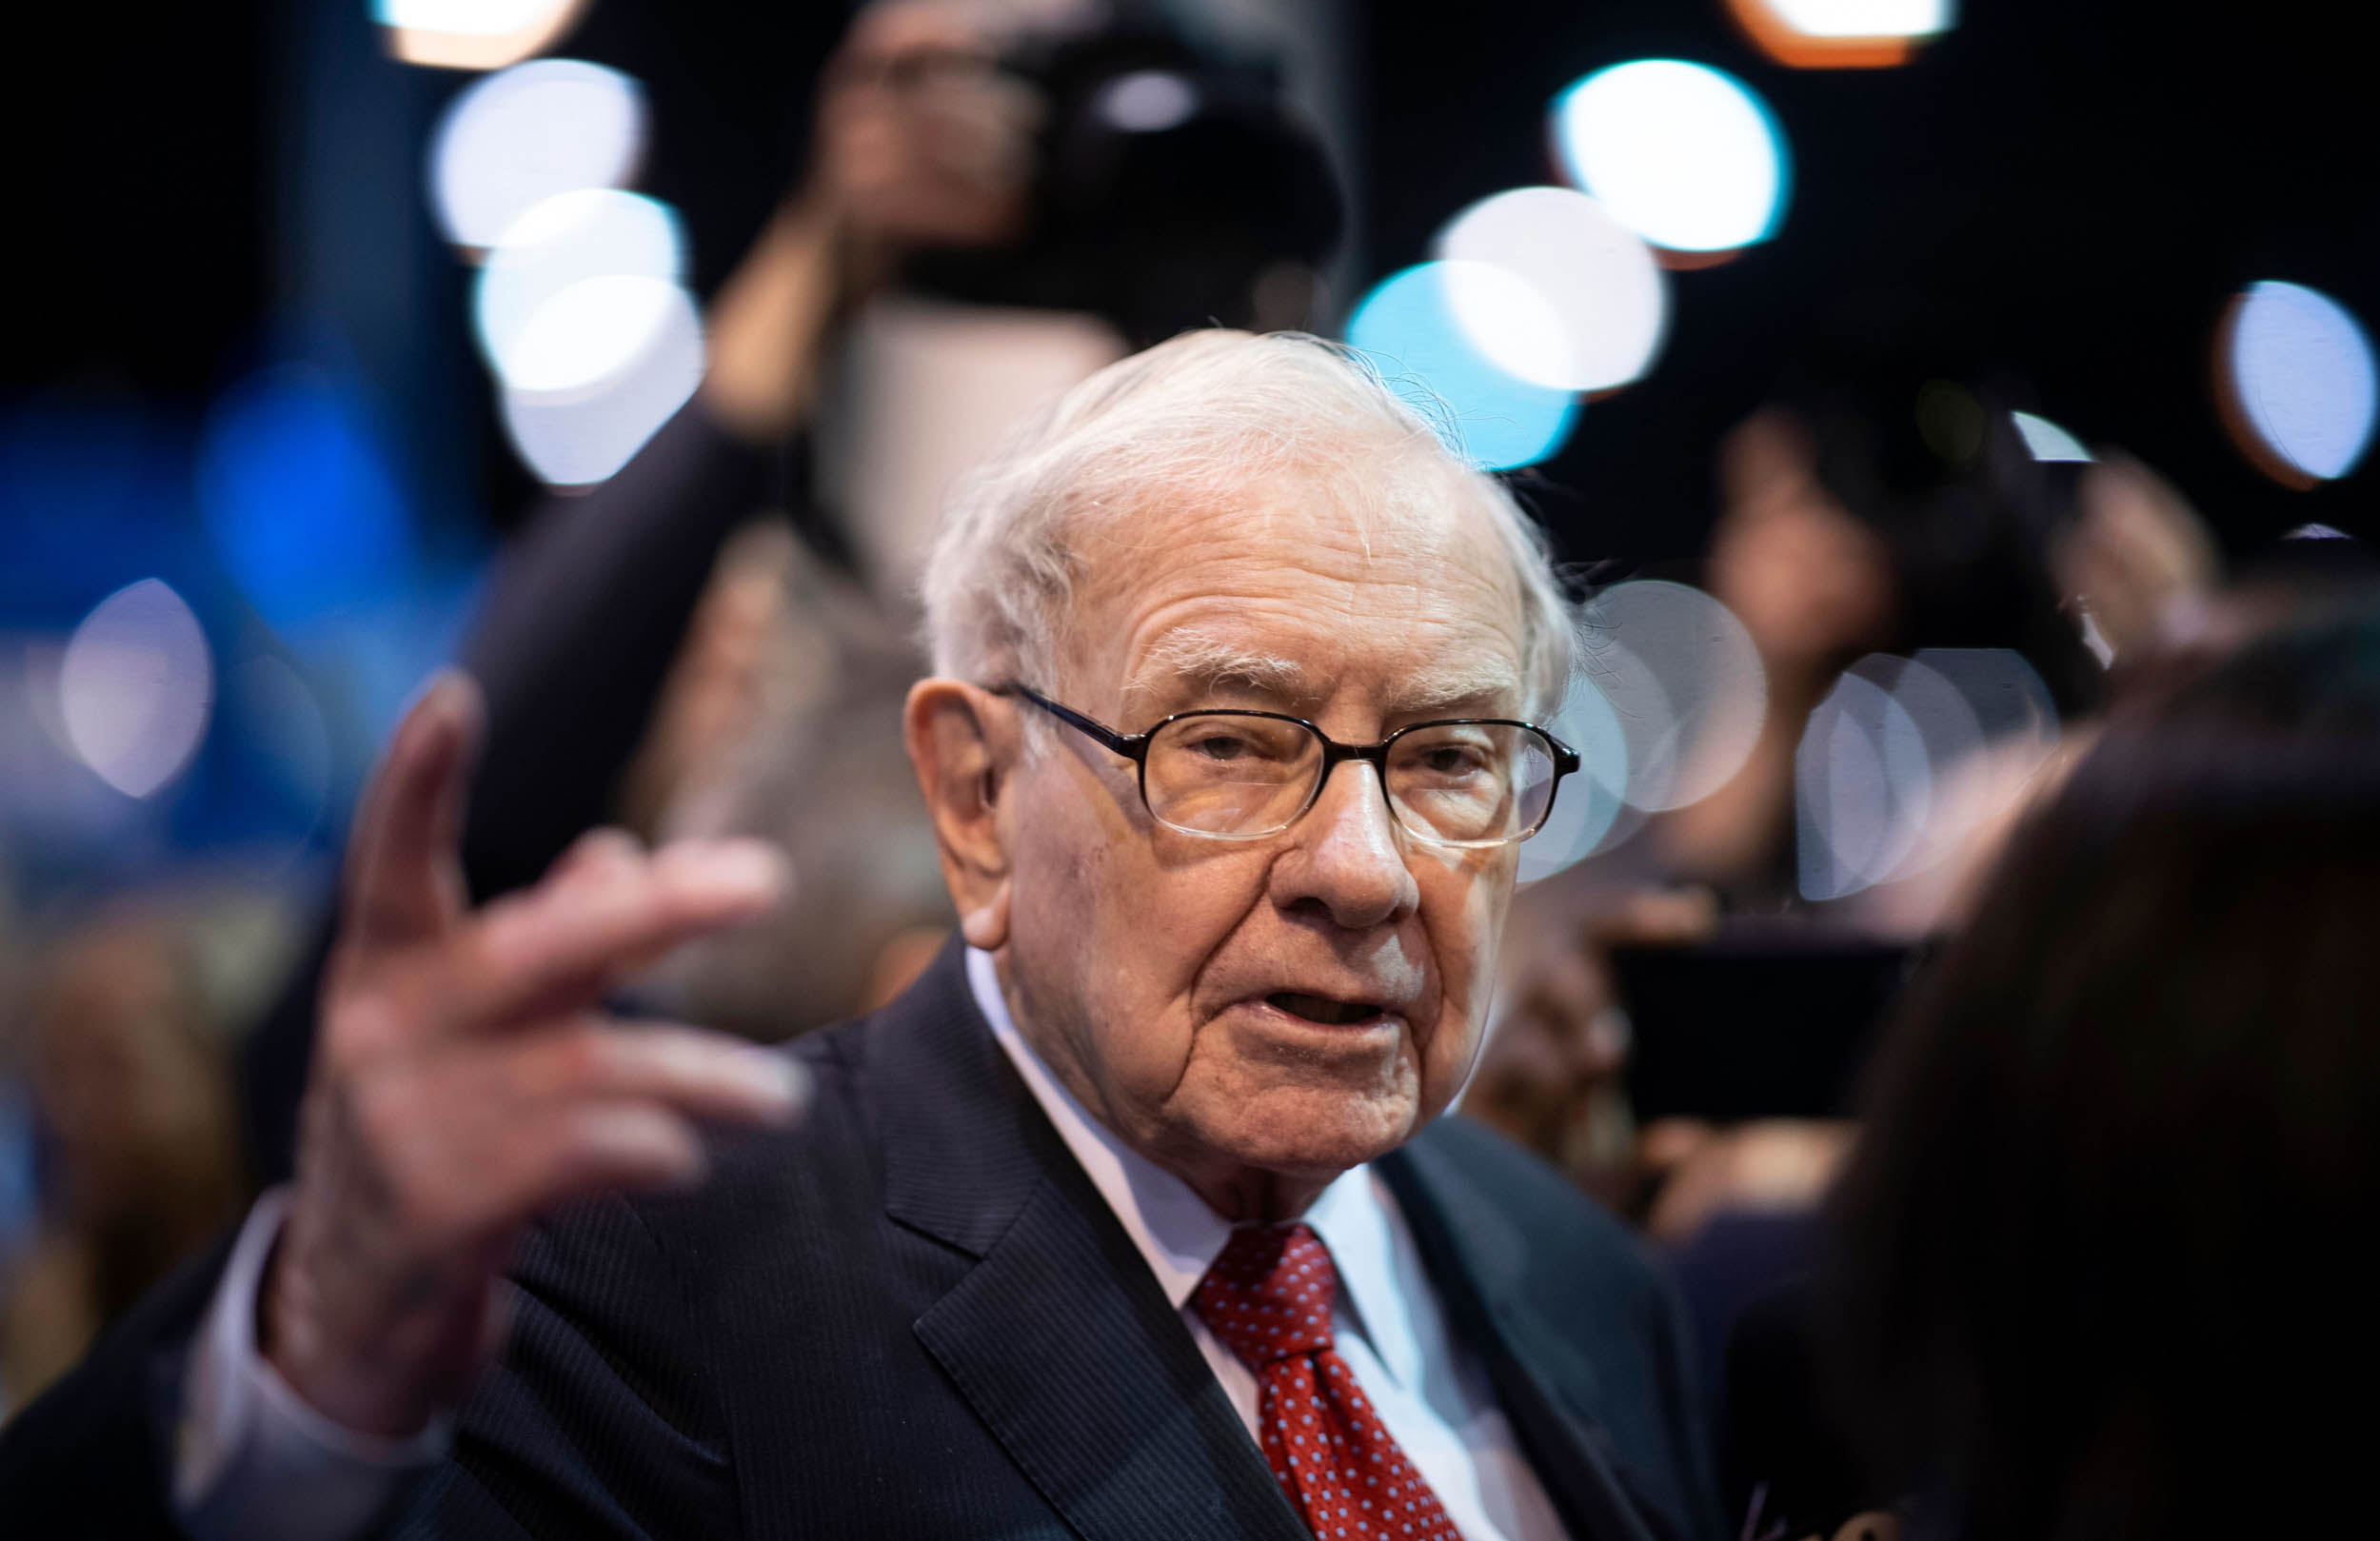 Nhà đầu tư huyền thoại Warren Buffett: “Ngành công nghiệp ô tô quá khắc nghiệt”